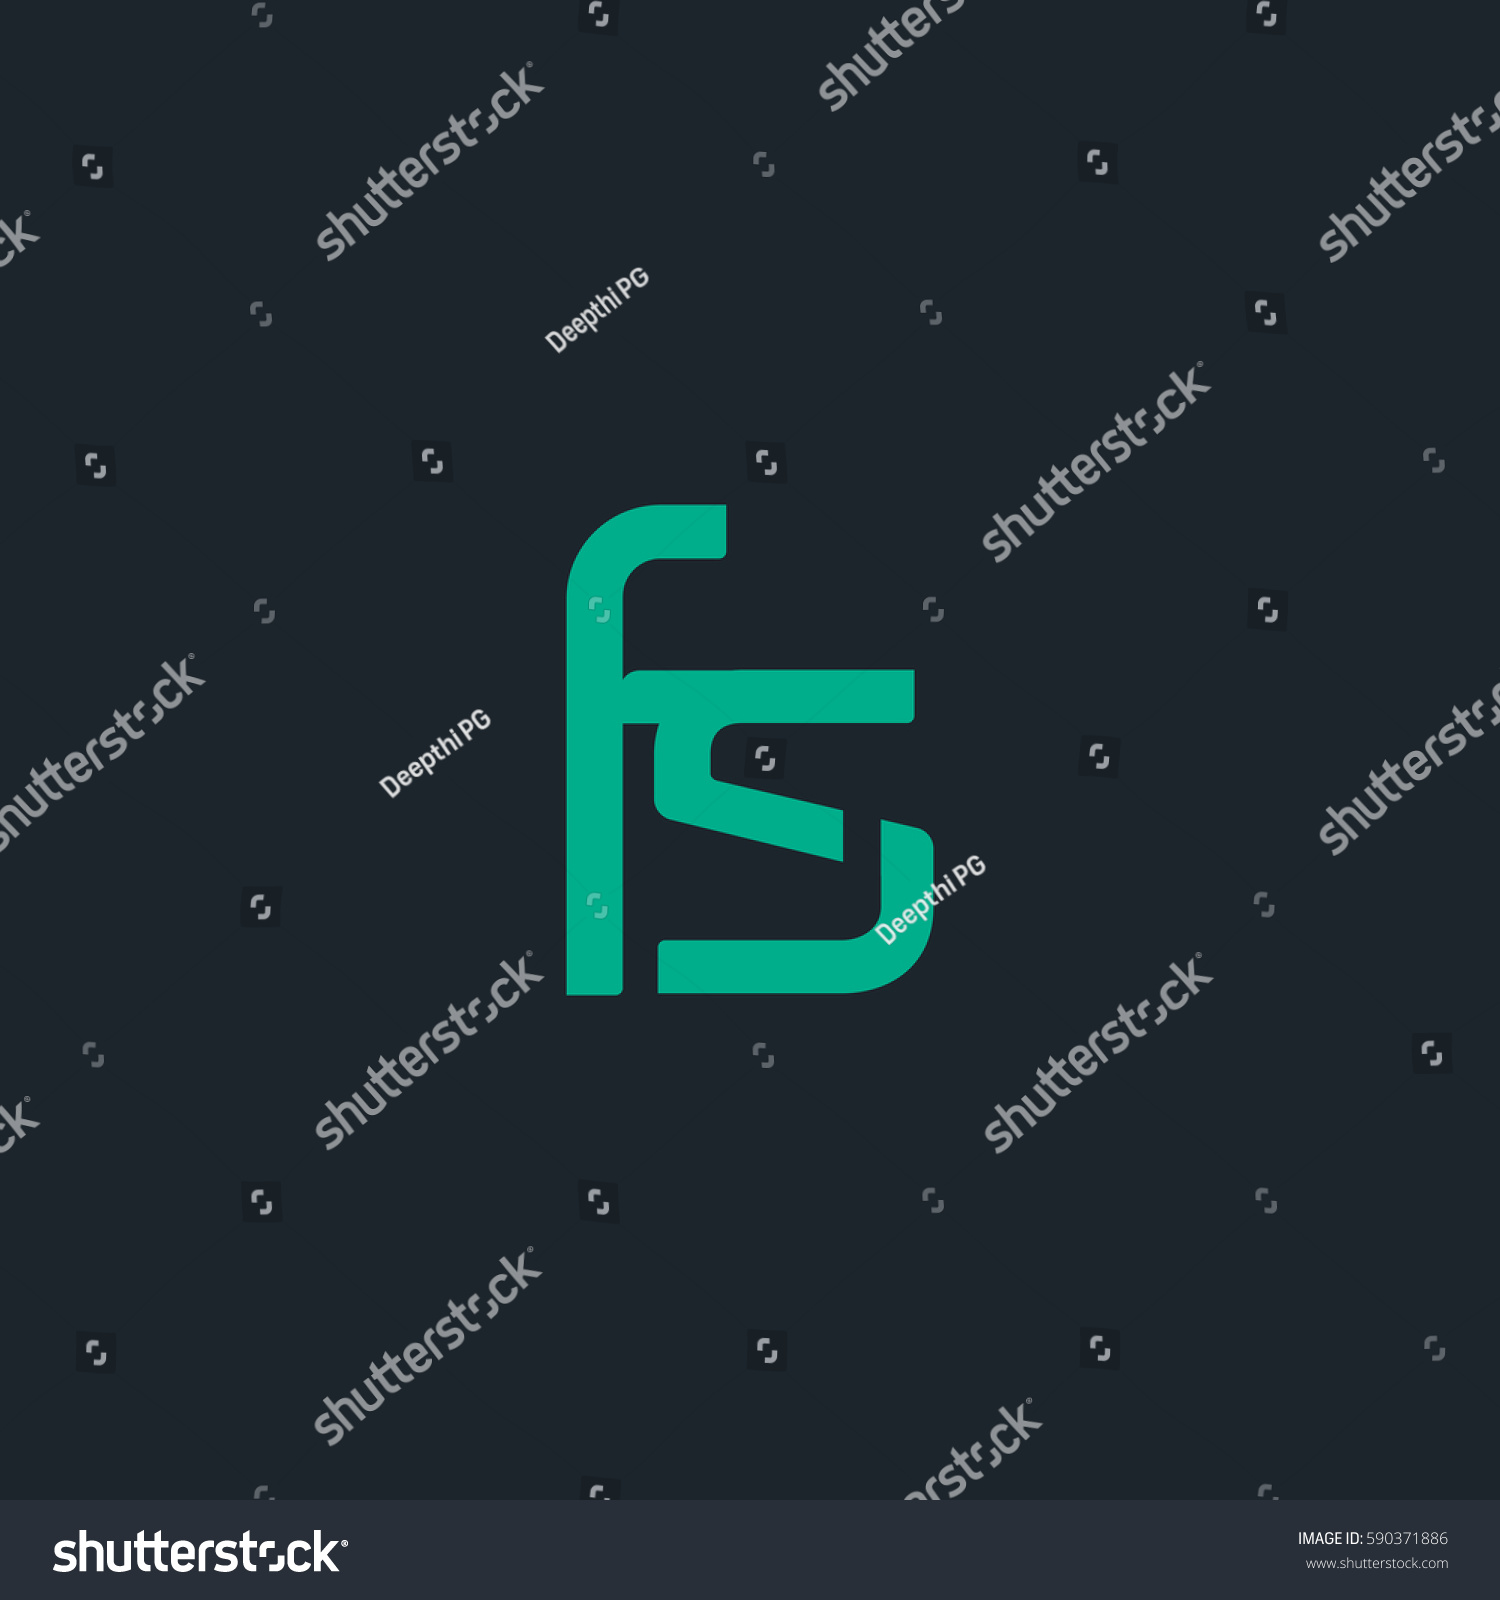 F S Letter Logo Design Vector Stock Vector 590371886 - Shutterstock